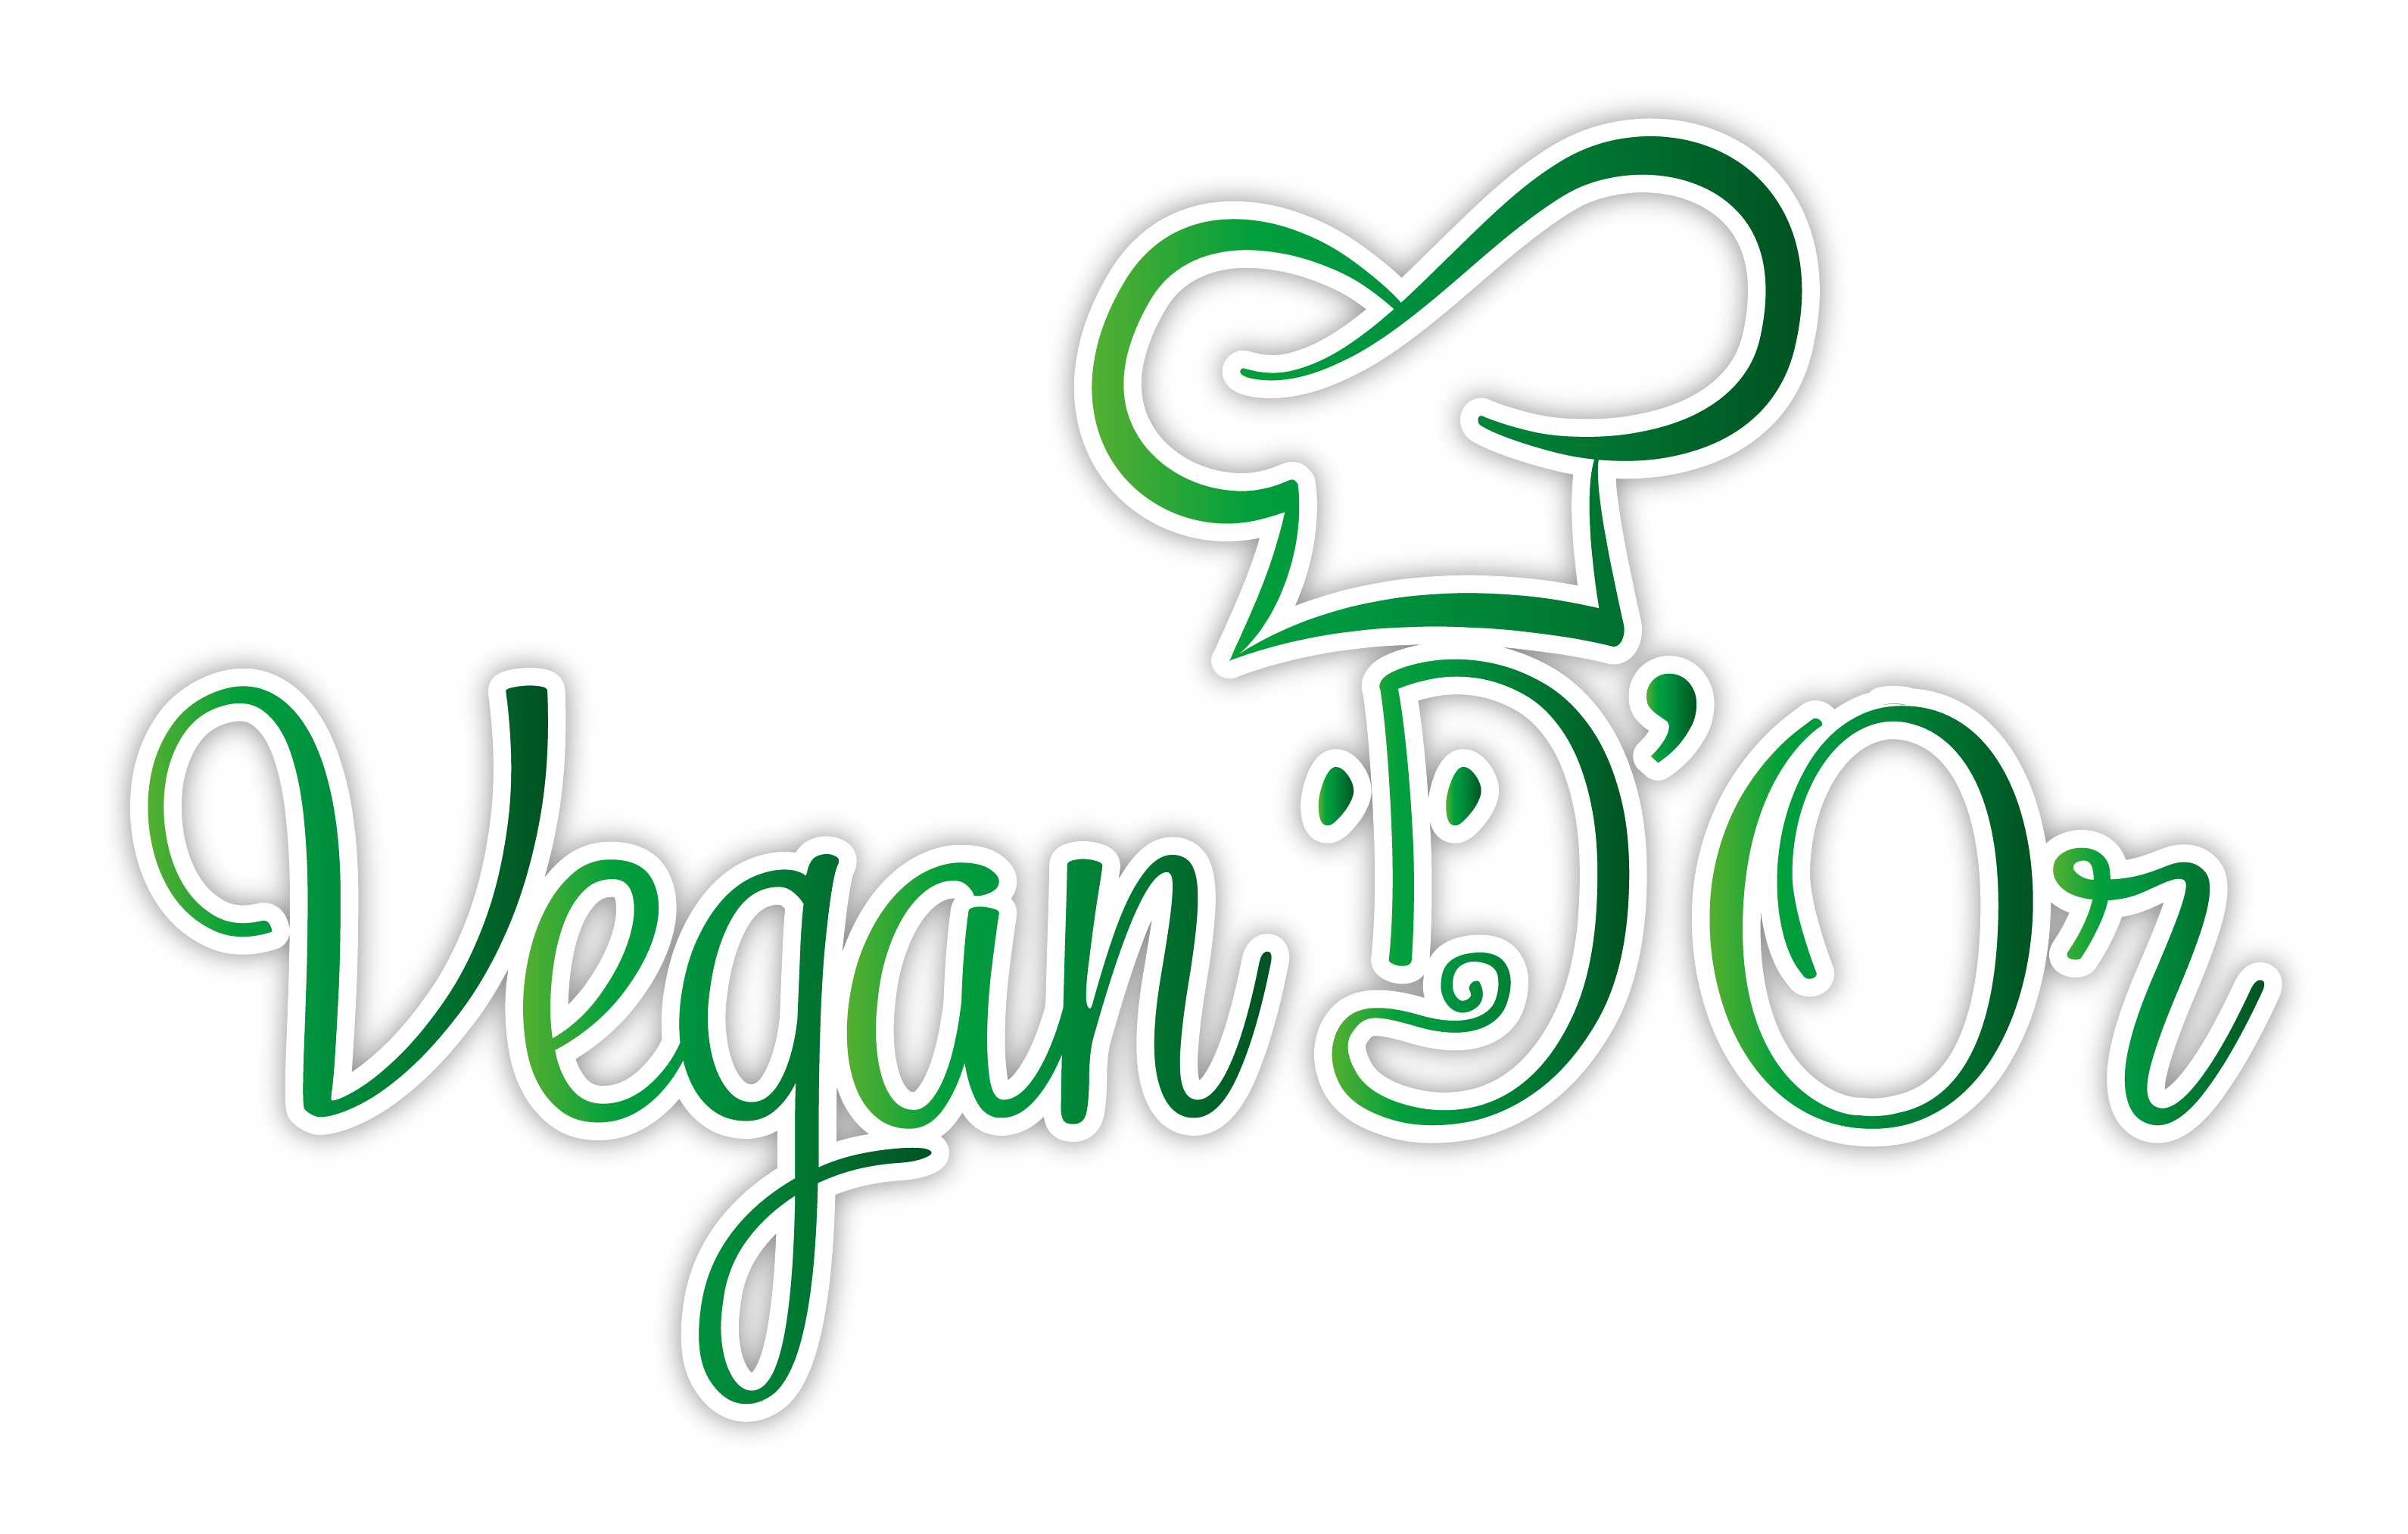 Vegan D'Or